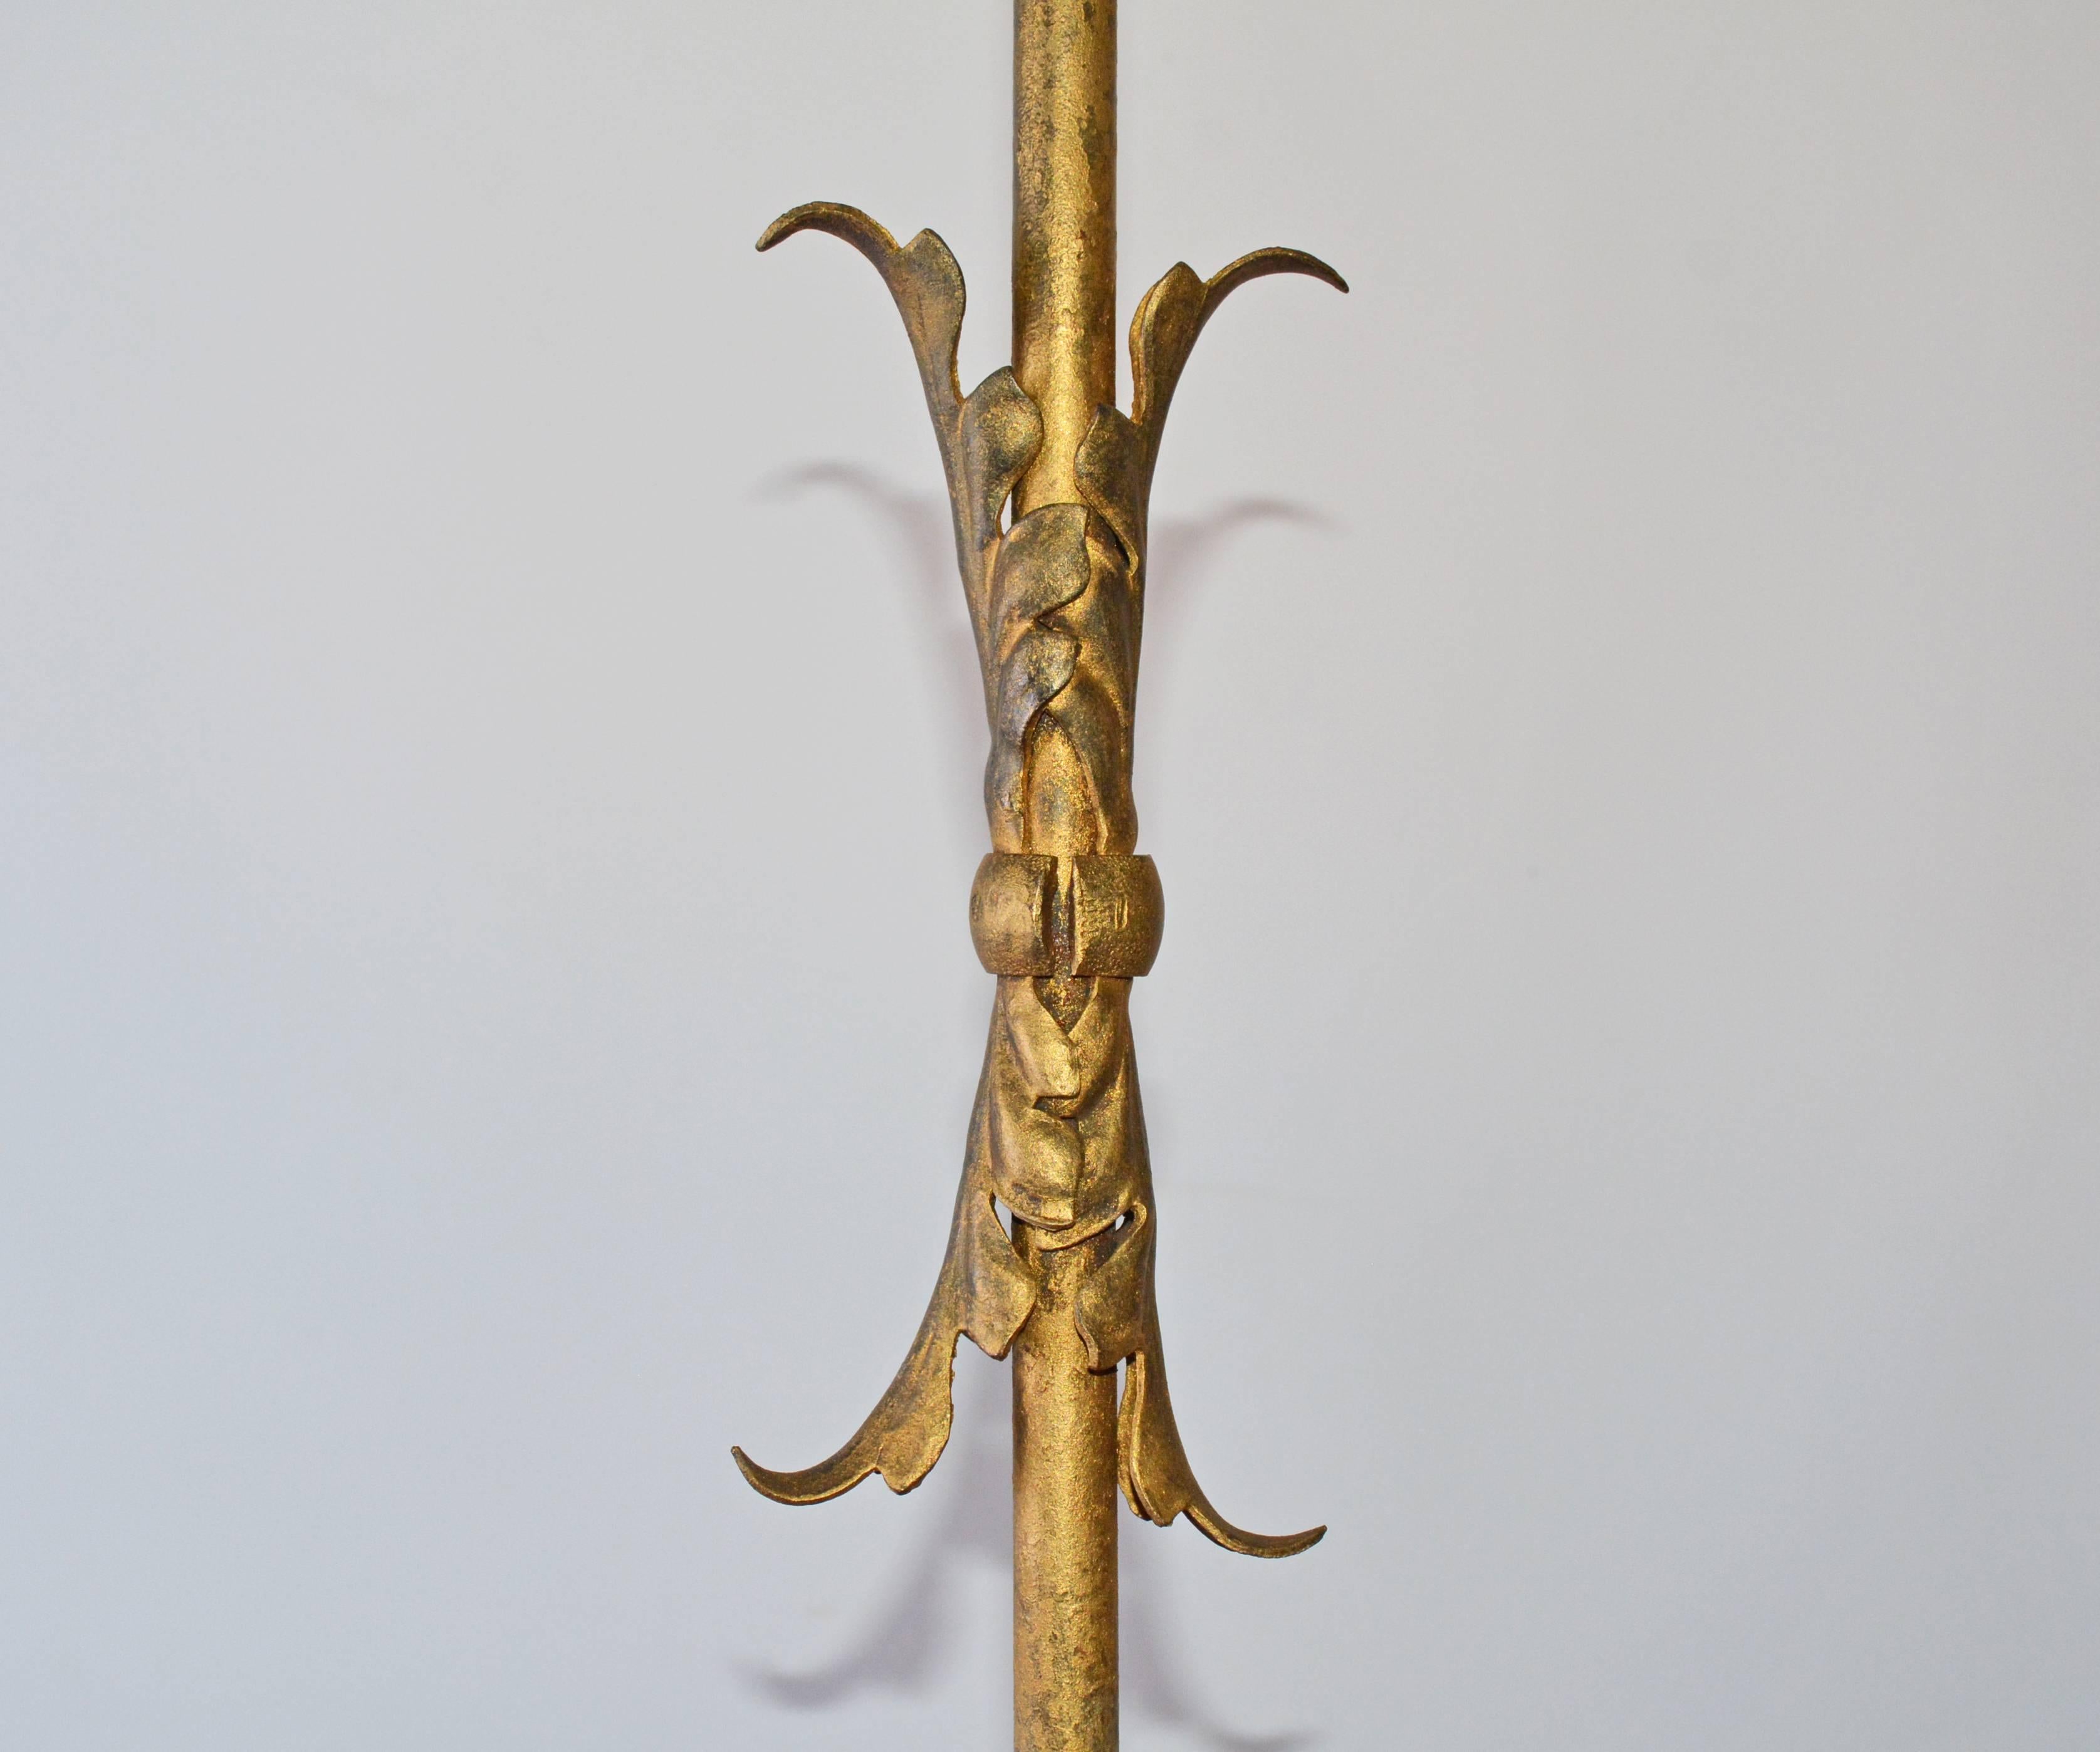 Le lampadaire en métal doré a trois pieds évasés et un mât central décoré de feuilles appliquées en métal doré. La lampe est électrifiée pour une utilisation aux États-Unis avec deux luminaires dotés chacun d'une chaîne de traction. L'abat-jour en